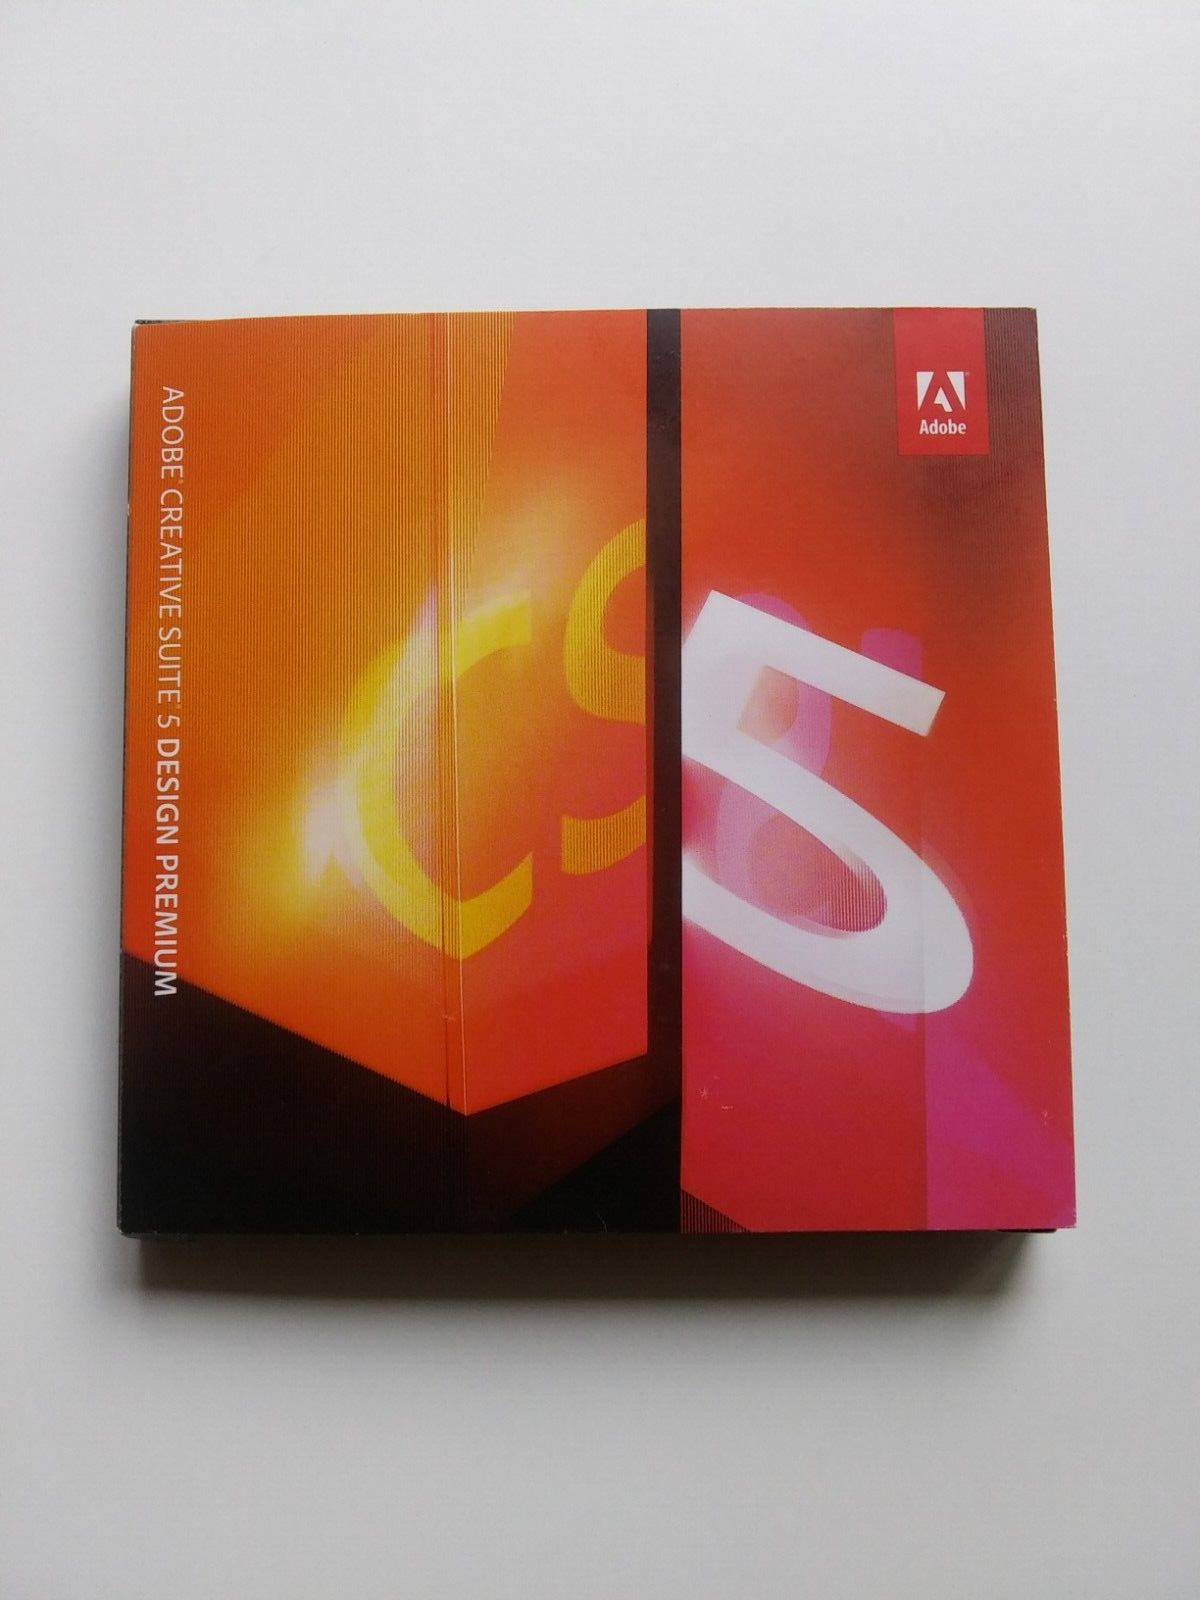 Adobe Creative Suite 5 Design Premium Windows Photoshop Illustrator InDesign CS5